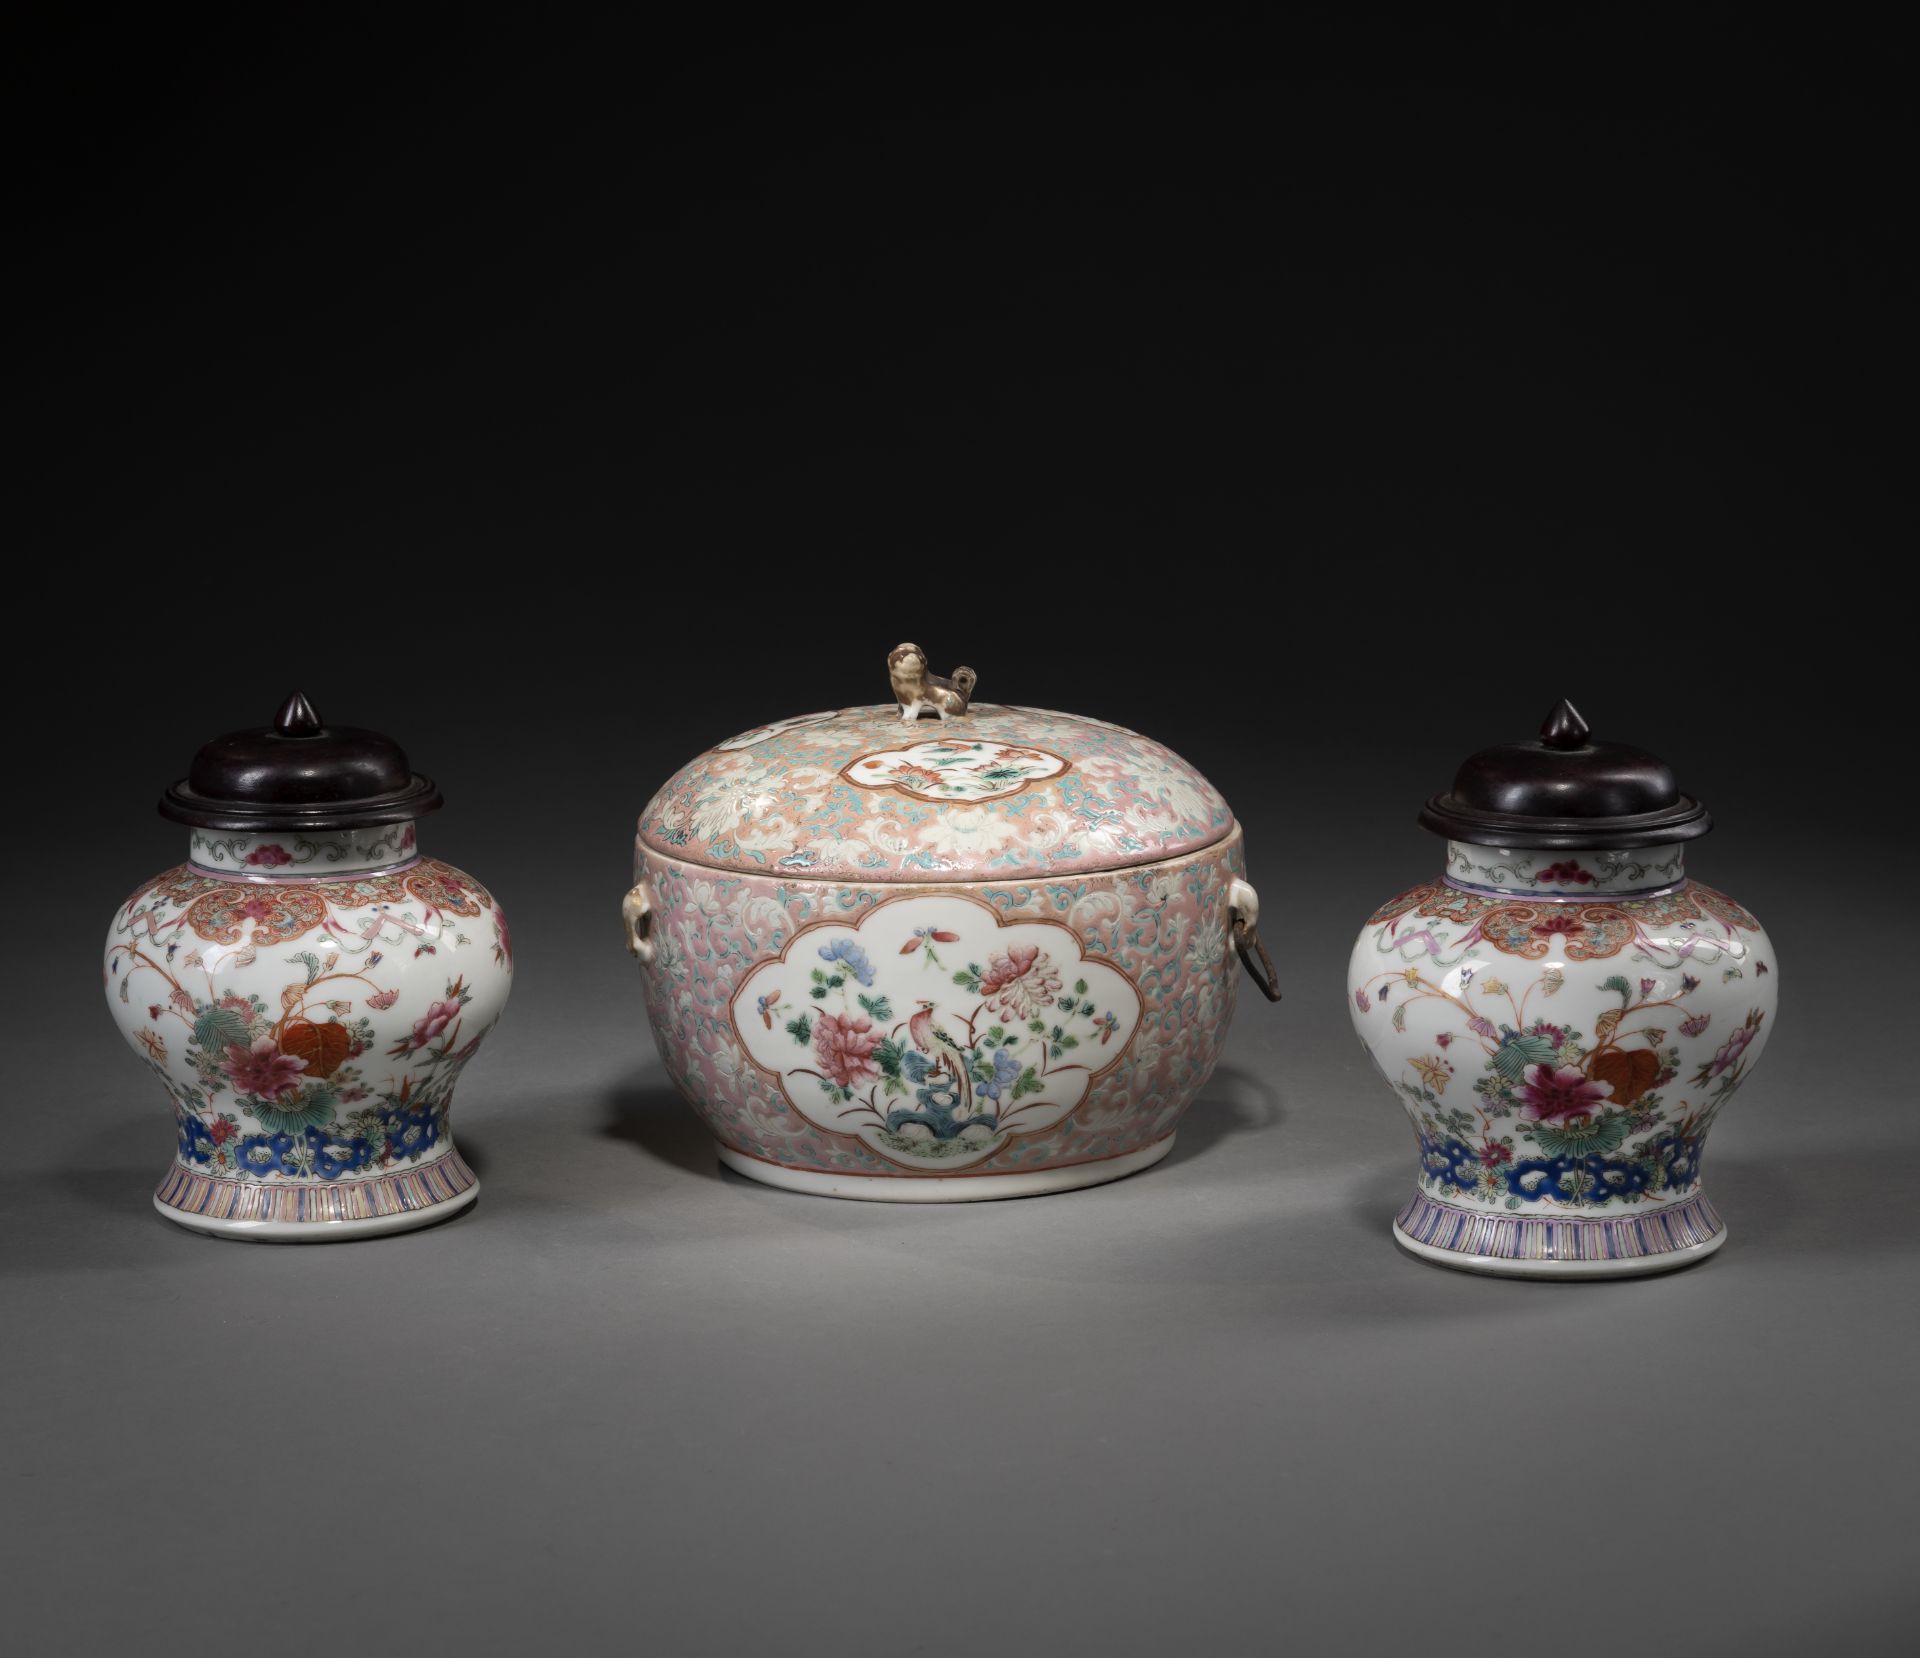 Eine Deckeldose und zwei Deckelvasen aus Porzellan mit floralem 'Famille rose'-Dekor